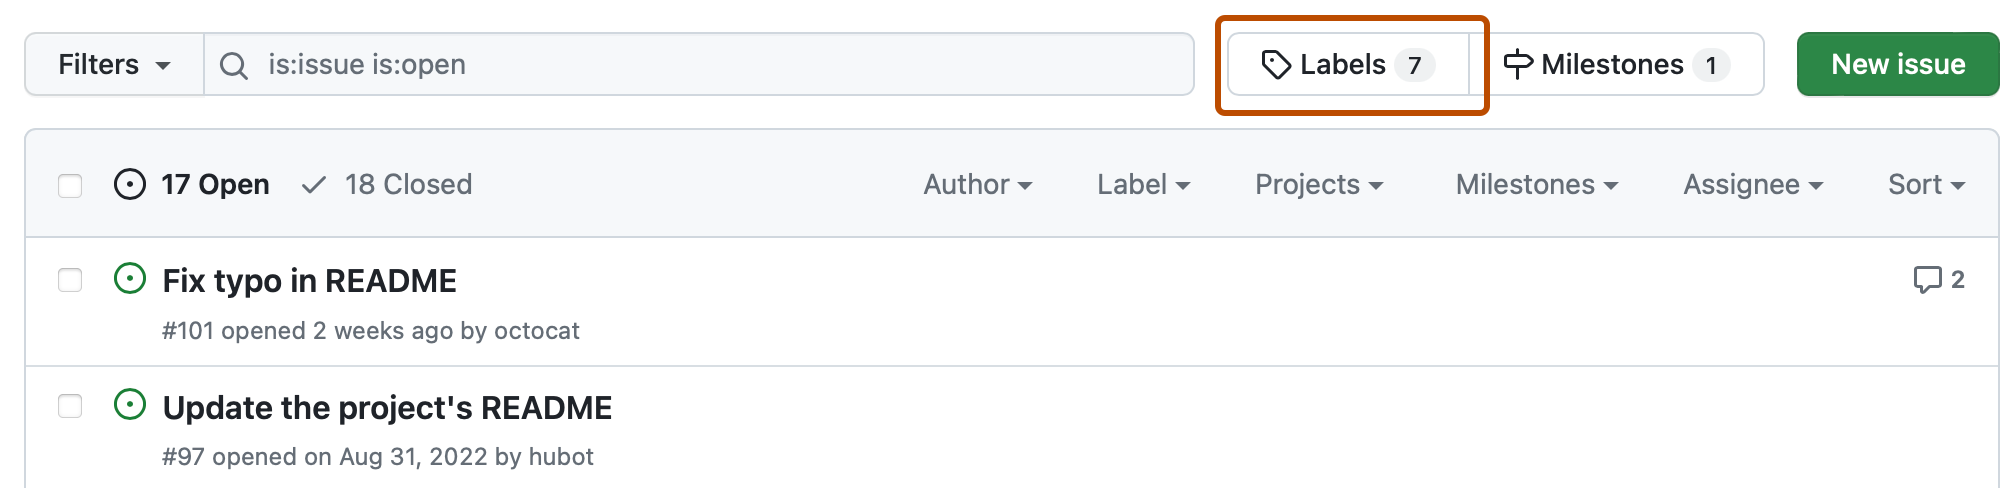 Captura de pantalla de la lista de problemas de un repositorio. Encima de la lista, un botón, etiquetado con un icono de etiqueta y "Etiquetas", se resalta en naranja oscuro.